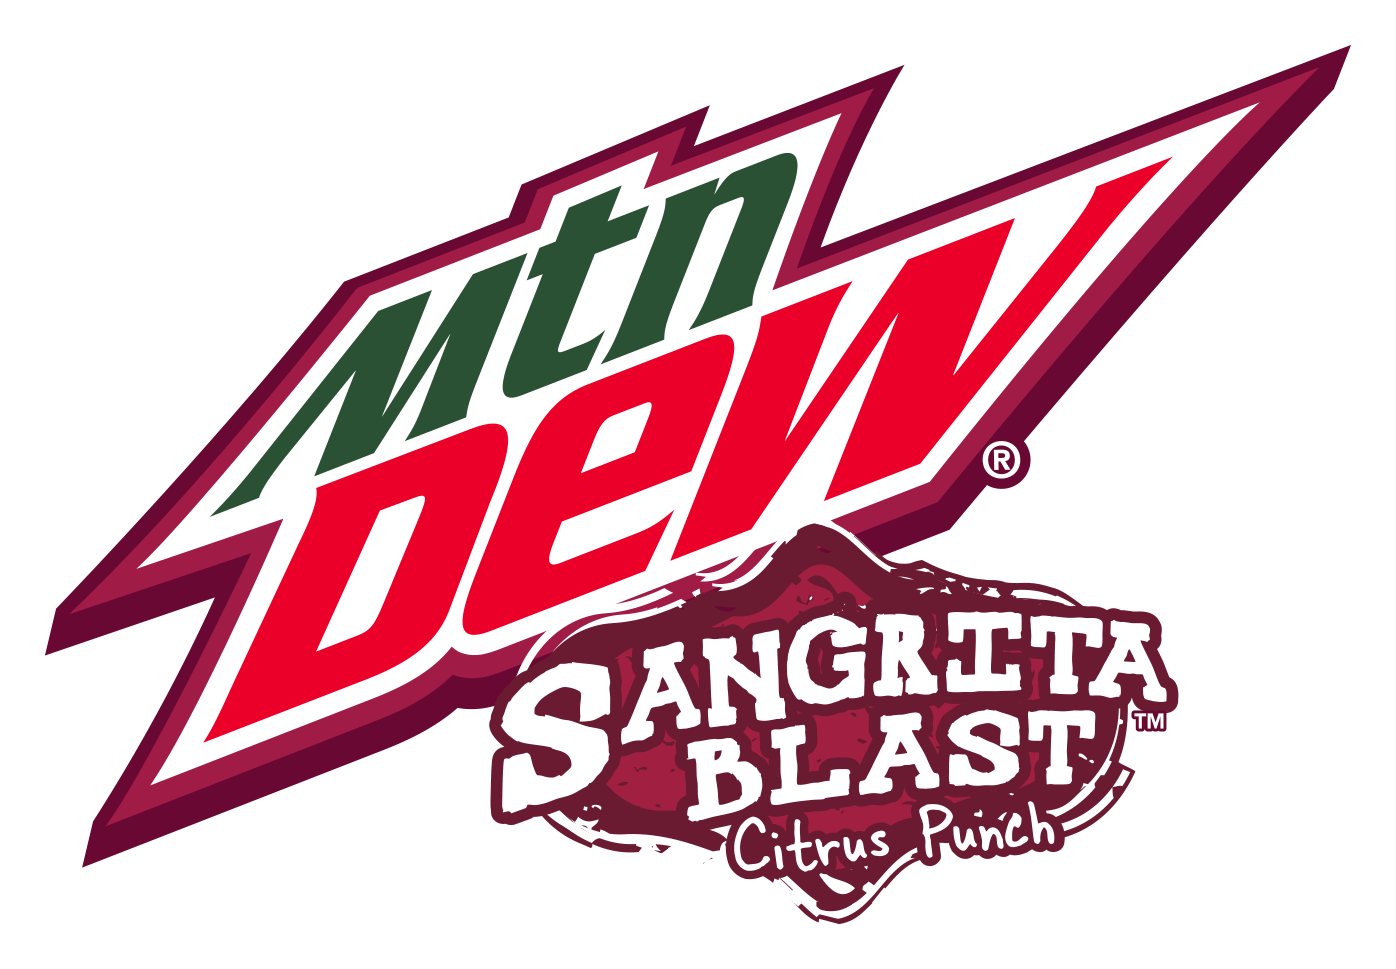 Mountain Dew Code Red Logo - Sangrita Blast | Mountain Dew Wiki | FANDOM powered by Wikia